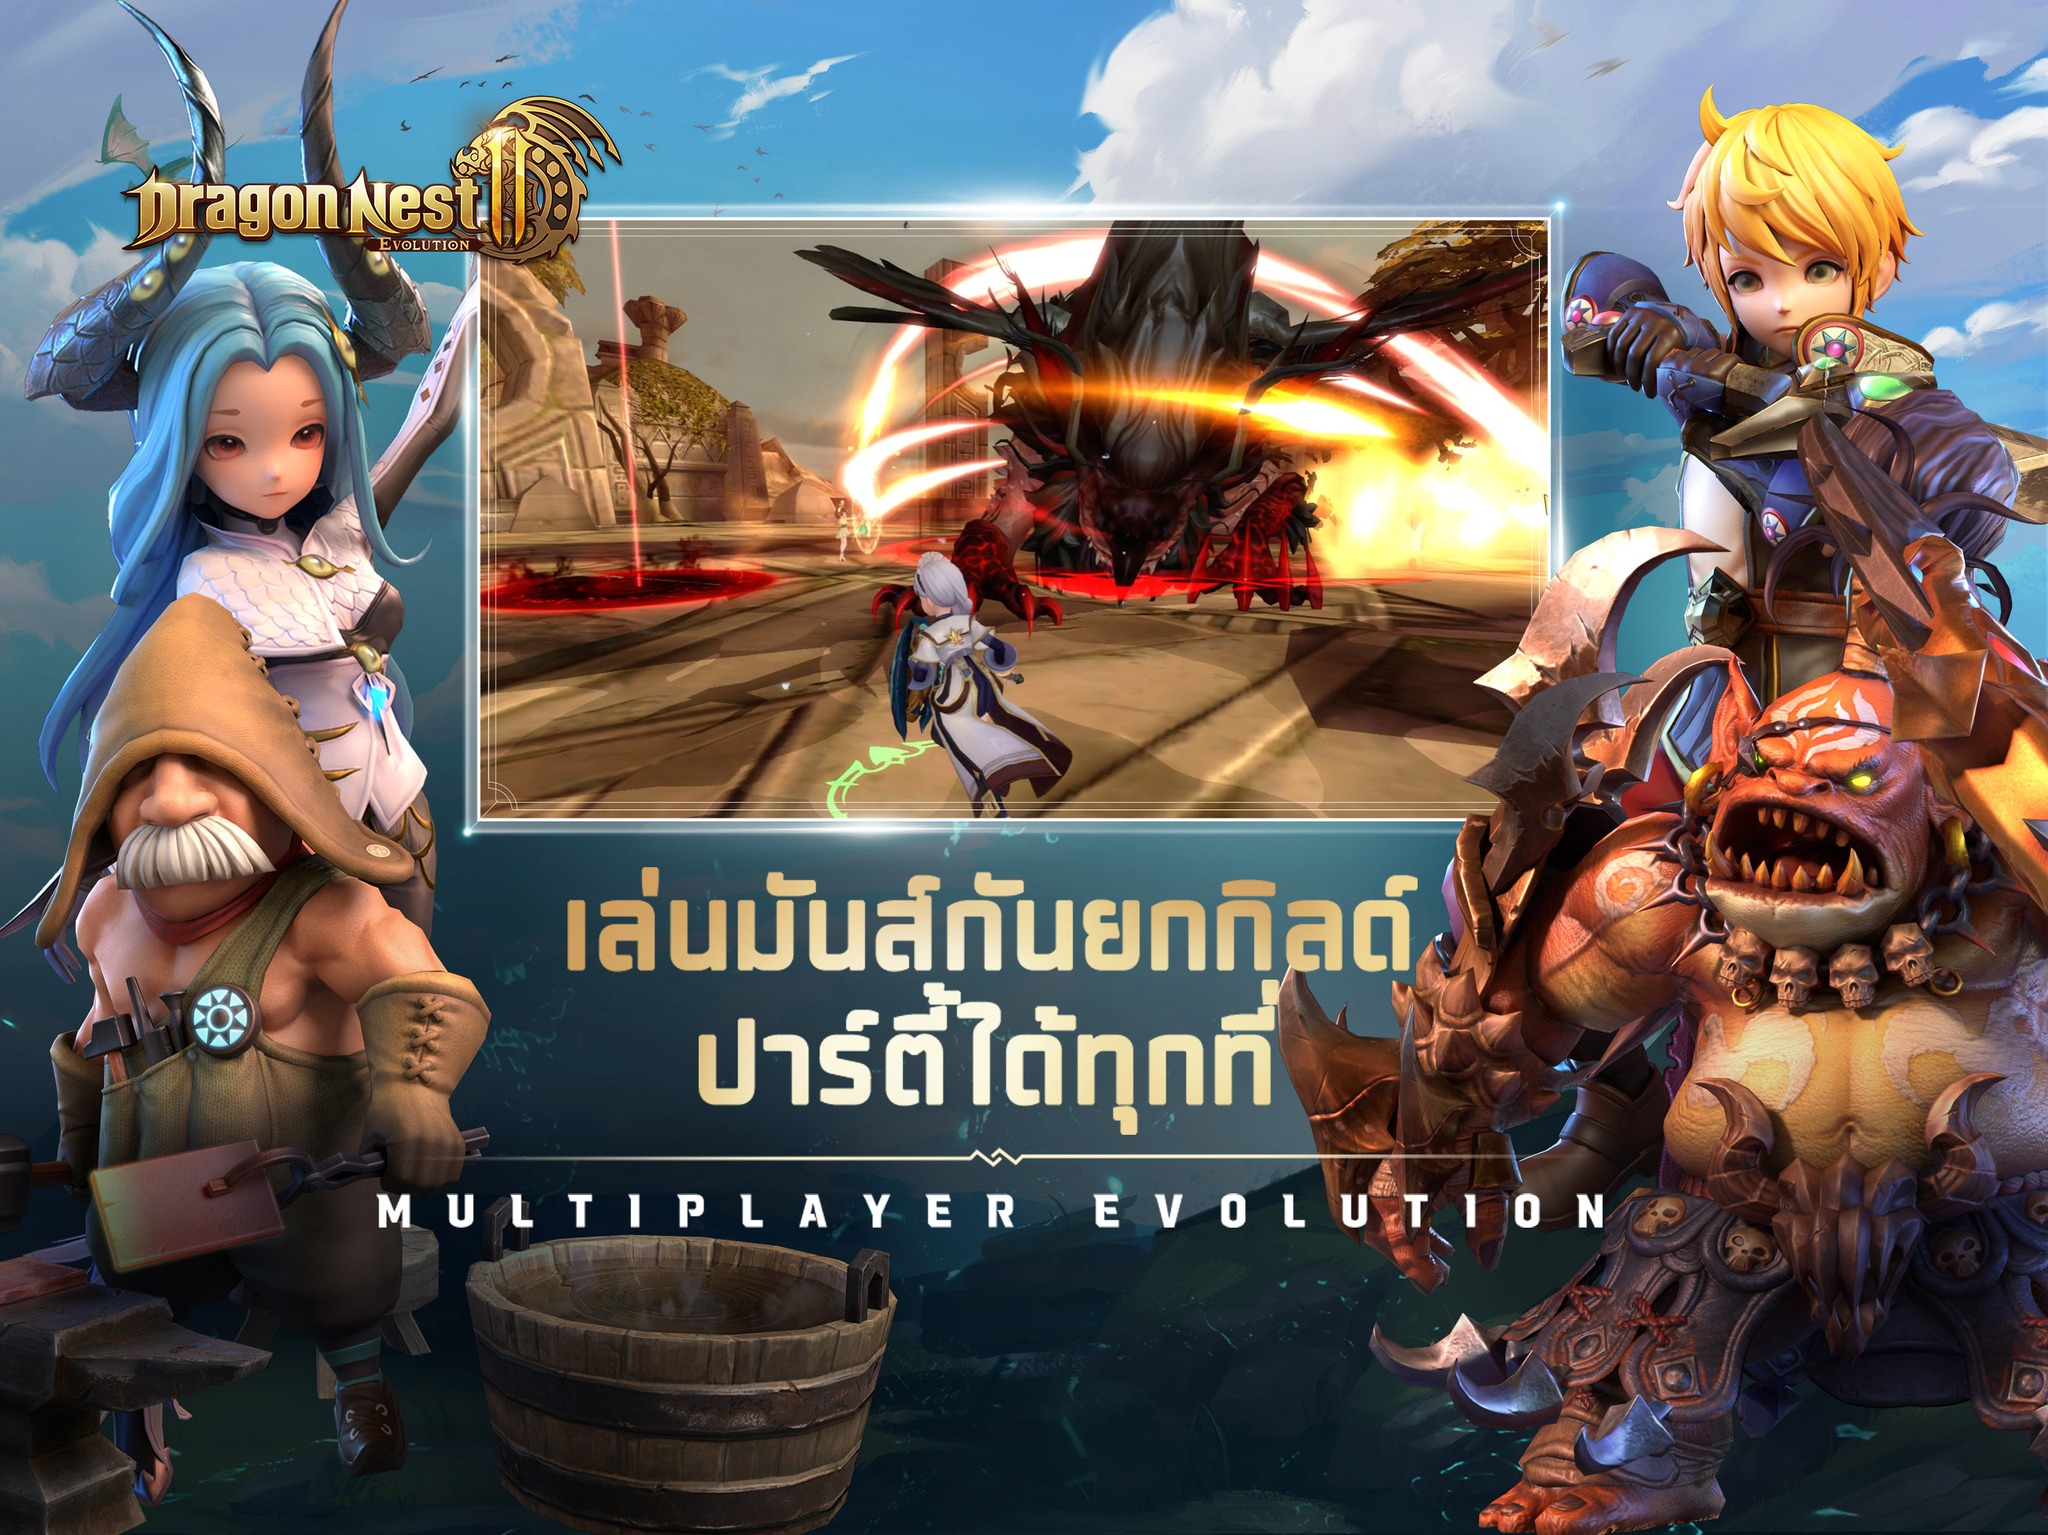 เล่น Dragon Nest 2 Evolution-ฟรีบน-pc-ด้วย-NOXPLAYER-จอใหญ่-สุดเจ๋ง-free android emulator_noxplayer5